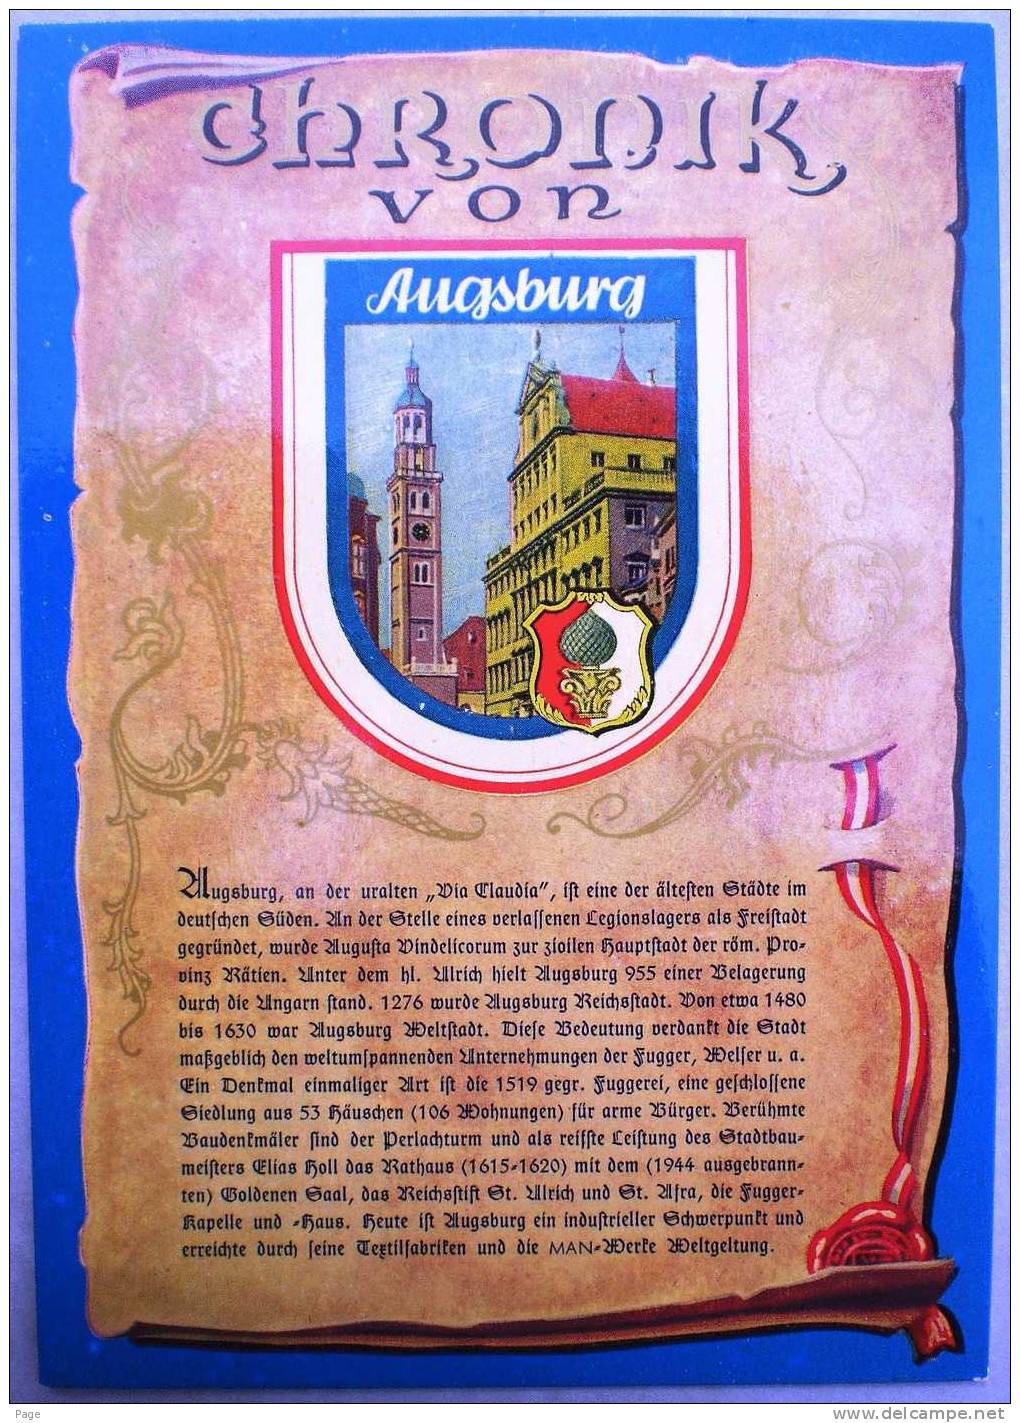 Augsburg,Chronik-Karte Mit Stadtwappen,1960 - Augsburg